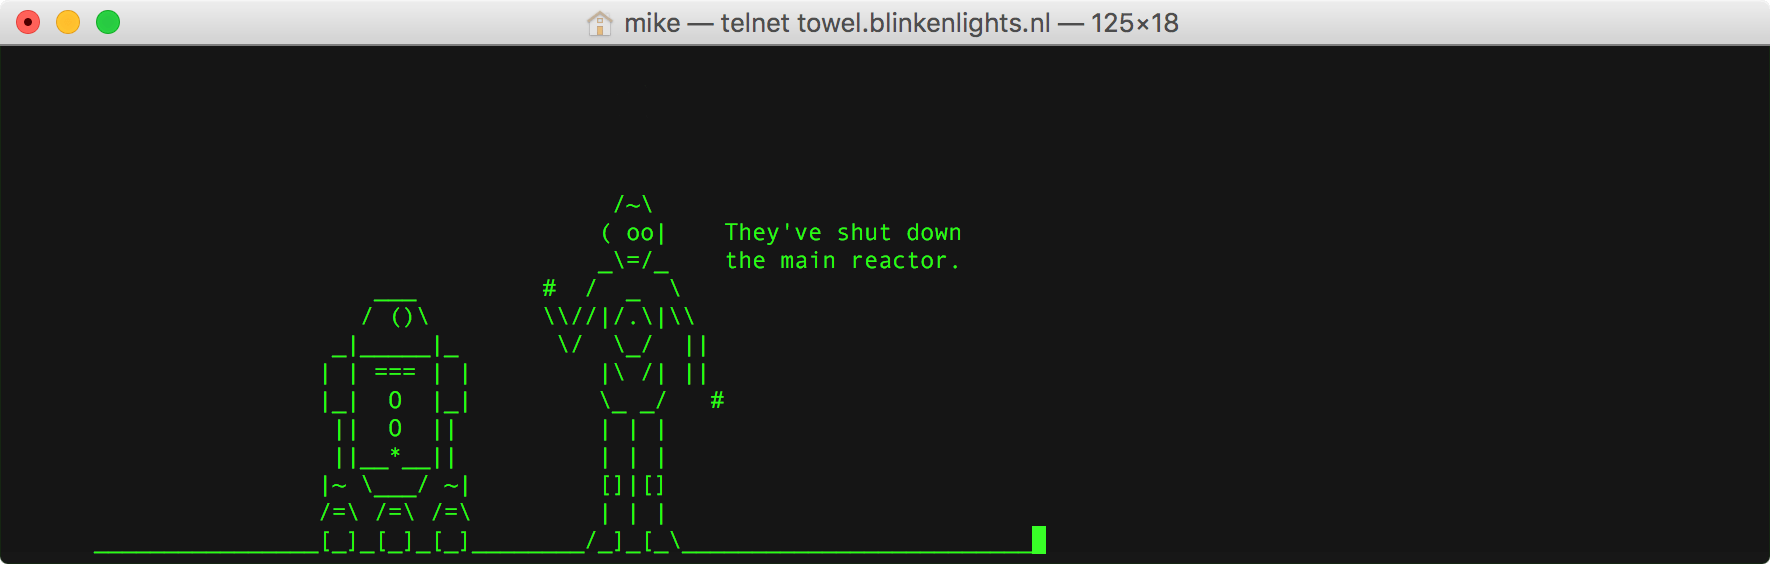 telnet towel.blinkenlights.nl